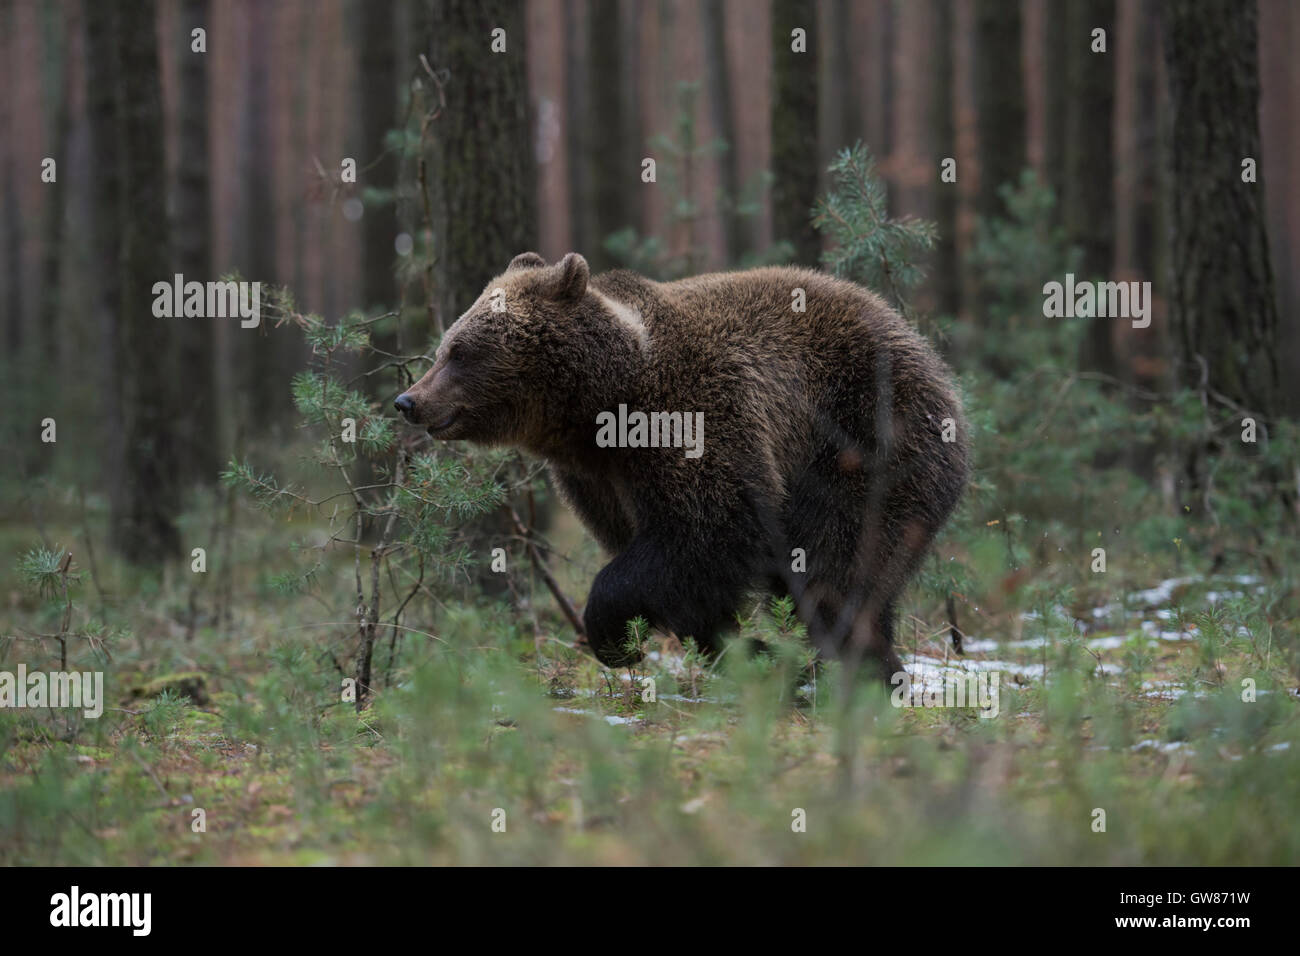 Oso Pardo europeo / Braunbaer ( Ursus arctos ), el joven animal, corriendo rápidamente a través de la espesura de un bosque de pinos. Foto de stock